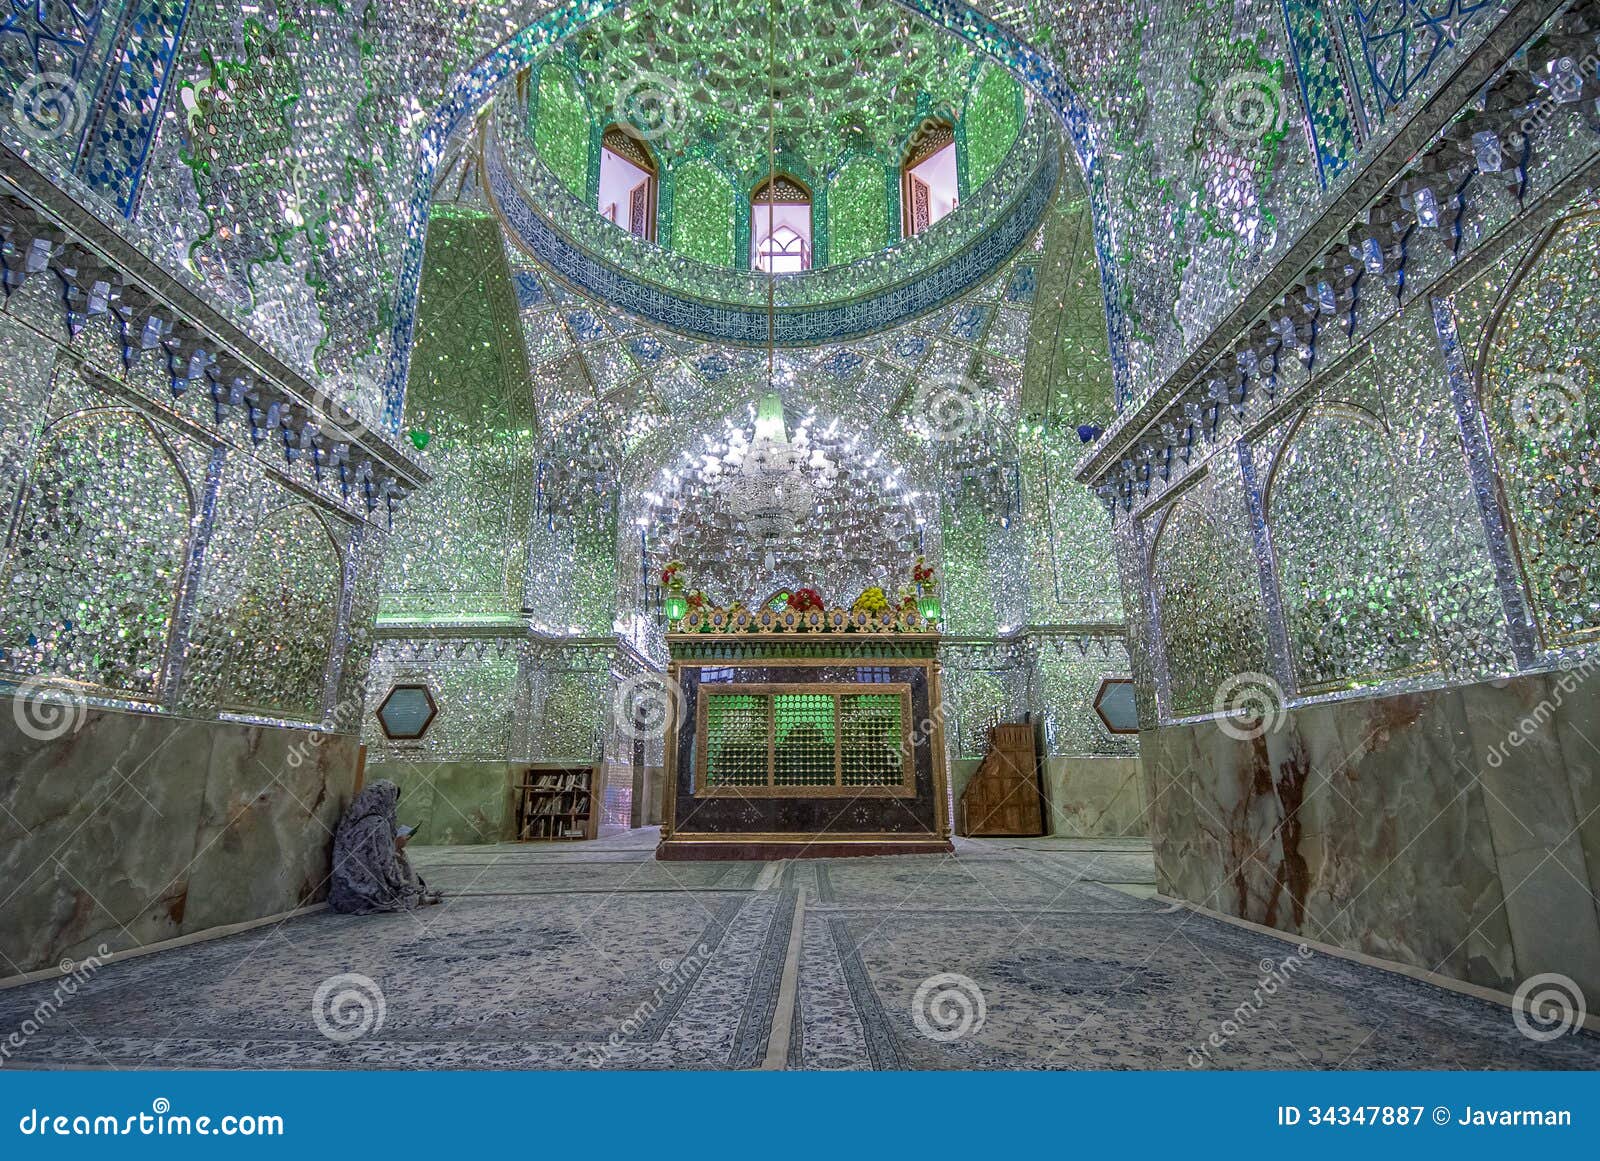 mirrored interior of ali ibn hamza shrine in shiraz, iran